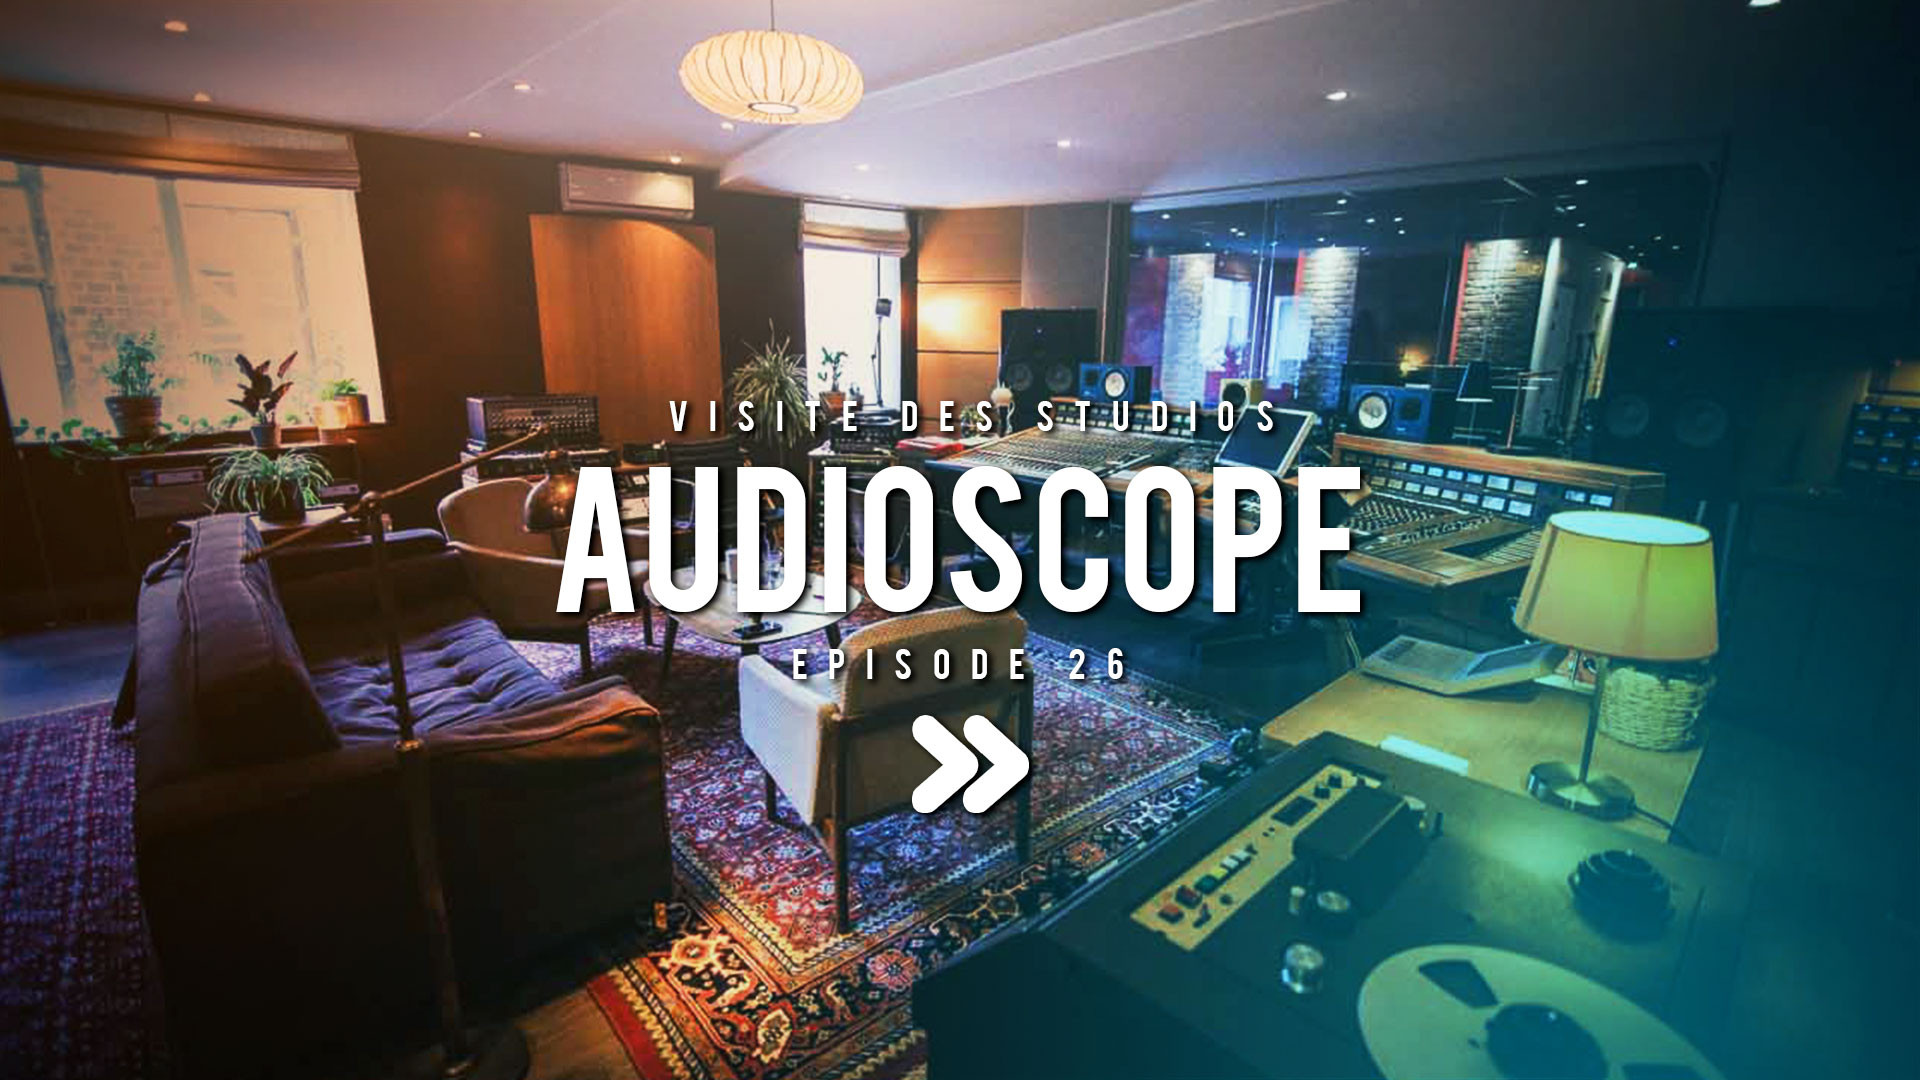 Visite aux studios Audioscope